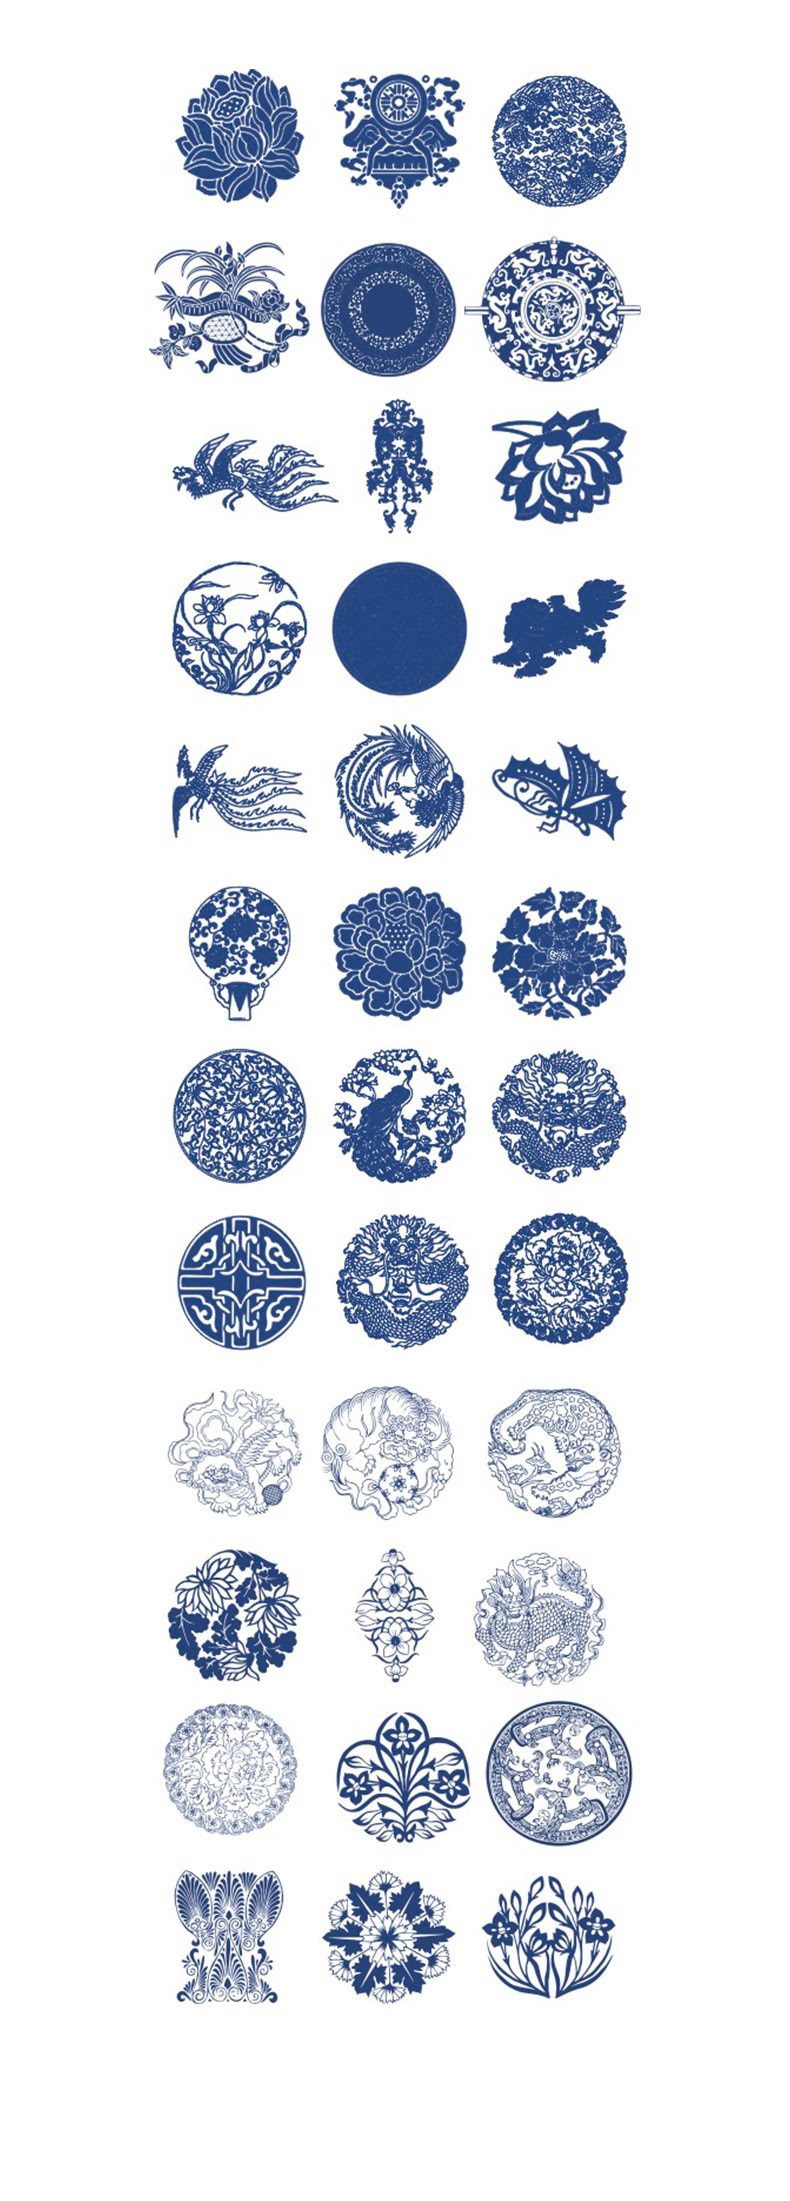 中国风古典日式青花瓷陶瓷中式纹理花纹平面印刷设计矢量素材-设计元素-到位啦UI